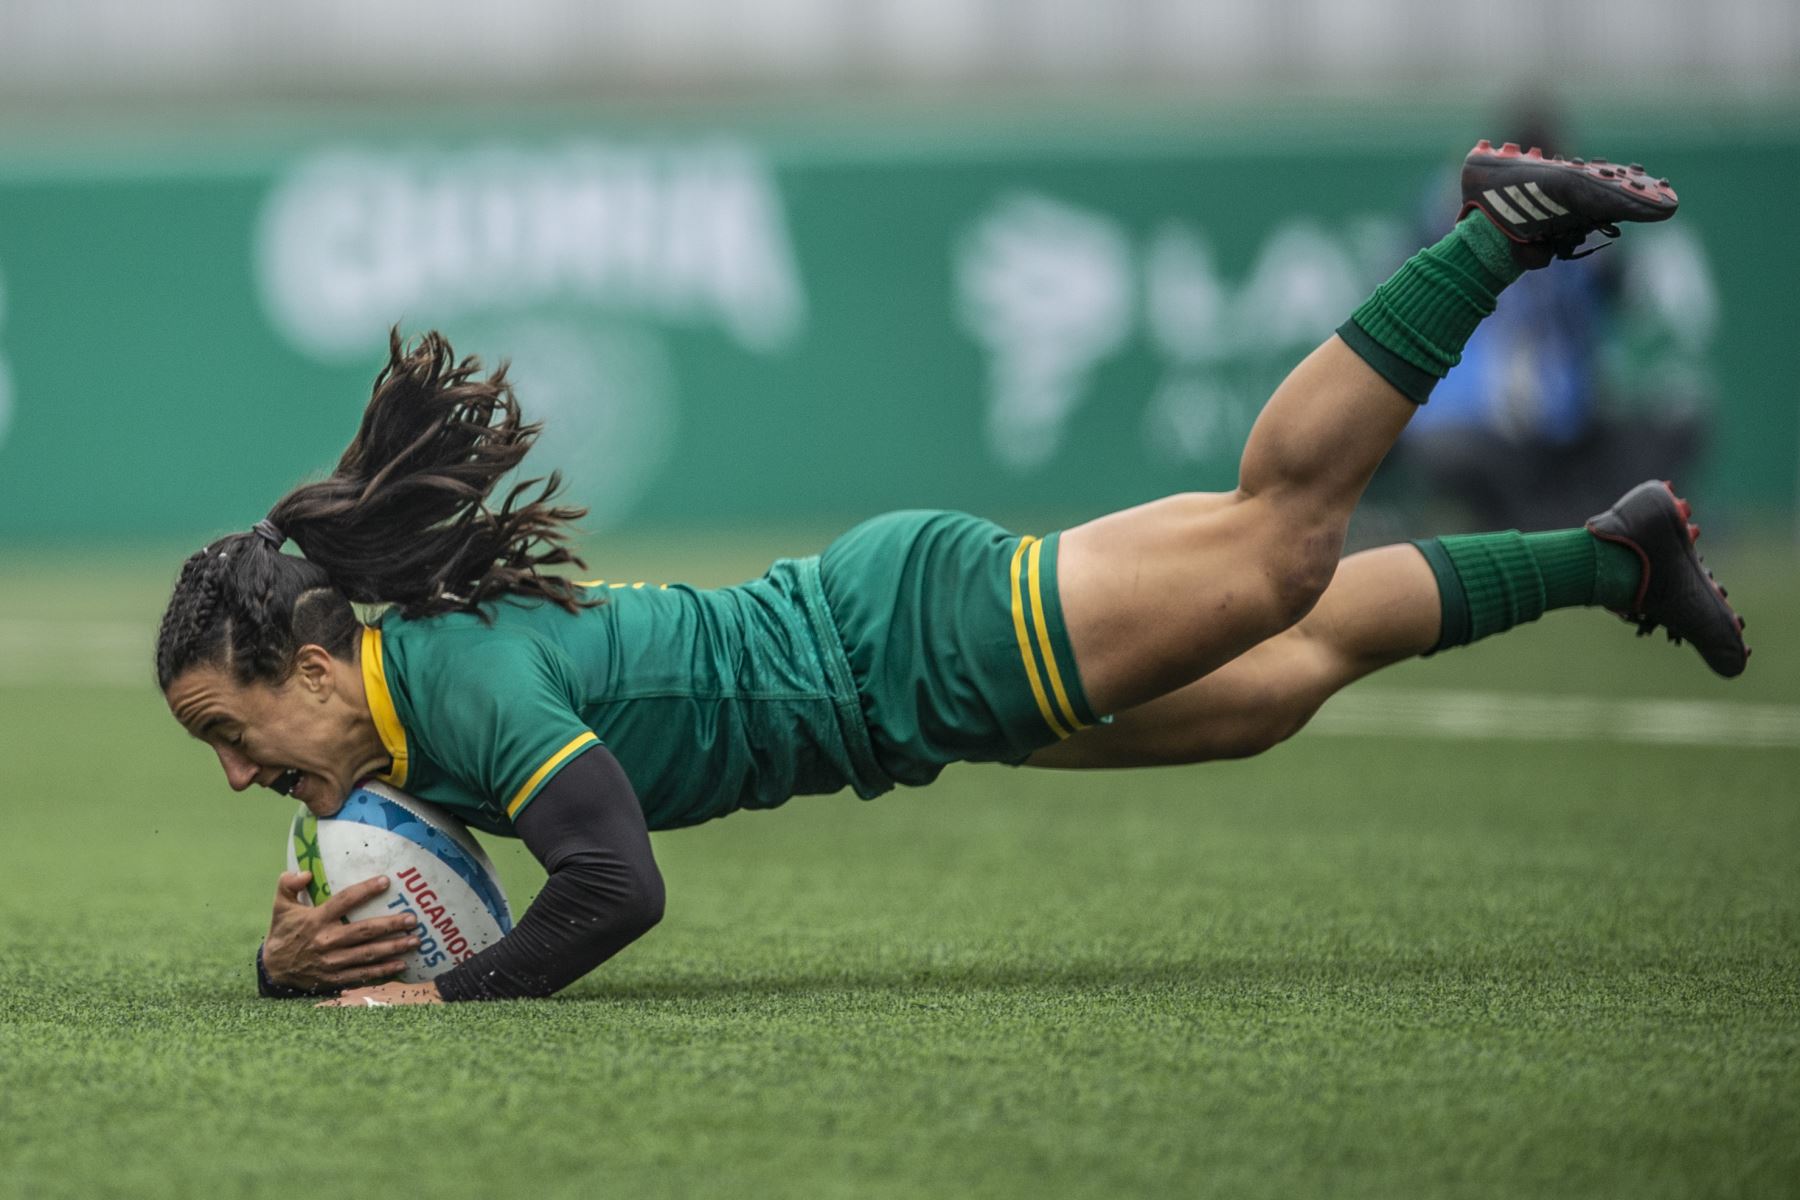 La brasileña Isadora Cerullo anota un intento en el partido por la medalla de bronce de rugby sietes femenino contra Colombia durante los Juegos Panamericanos Lima 2019. AFP